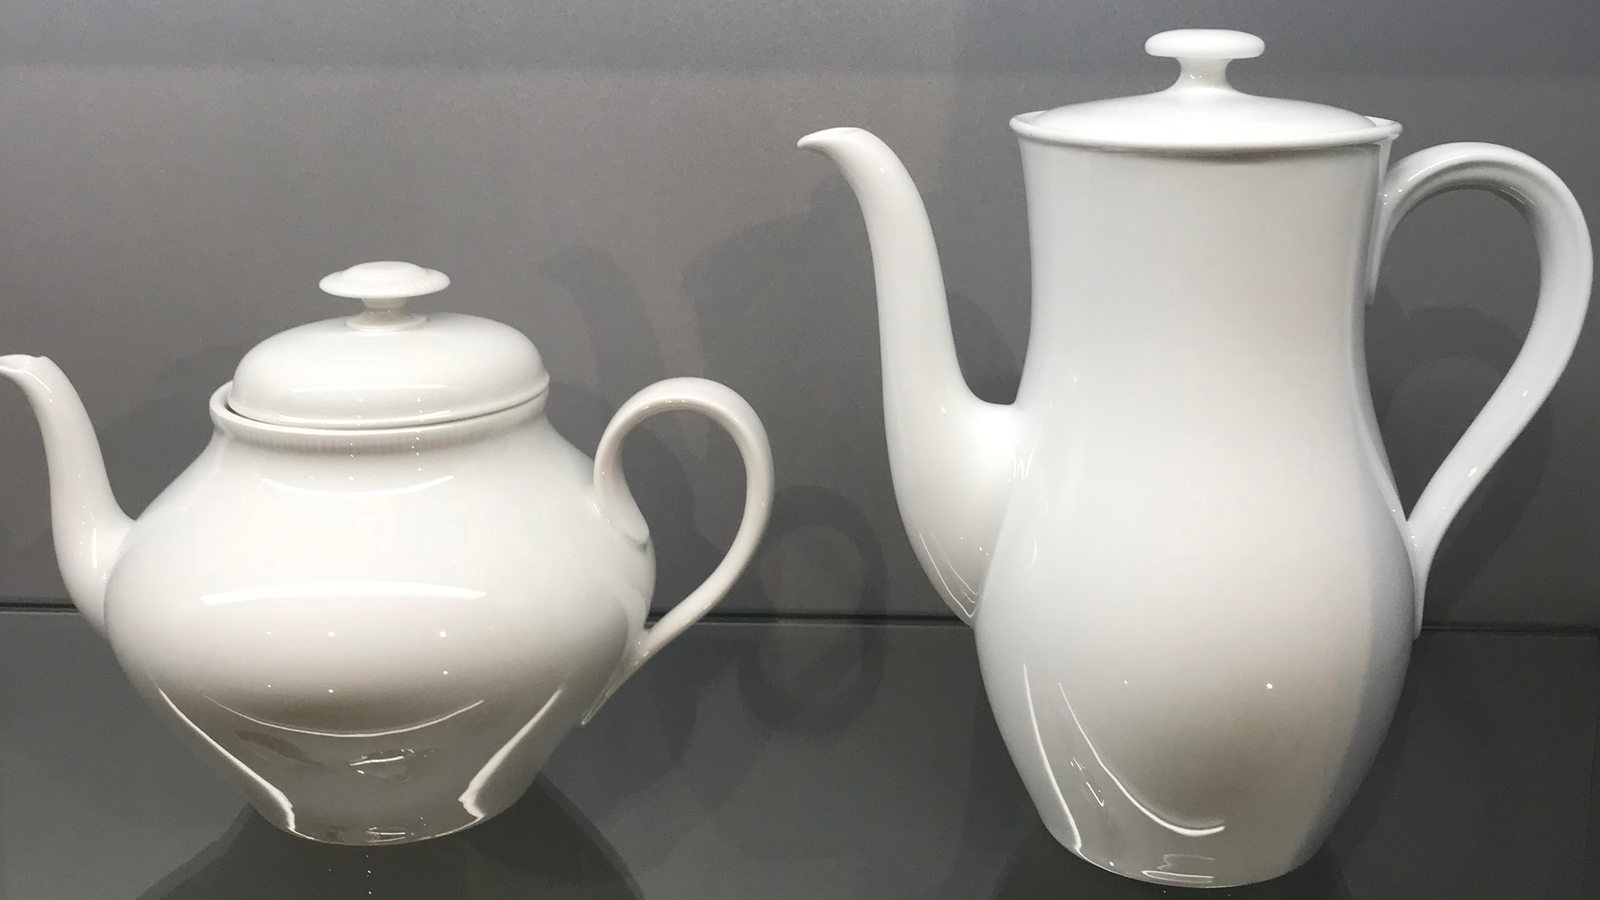 Eine Tee- und eine Kaffeekanne aus weißem Porzellan stehen in einer Ausstellungsvitrine.